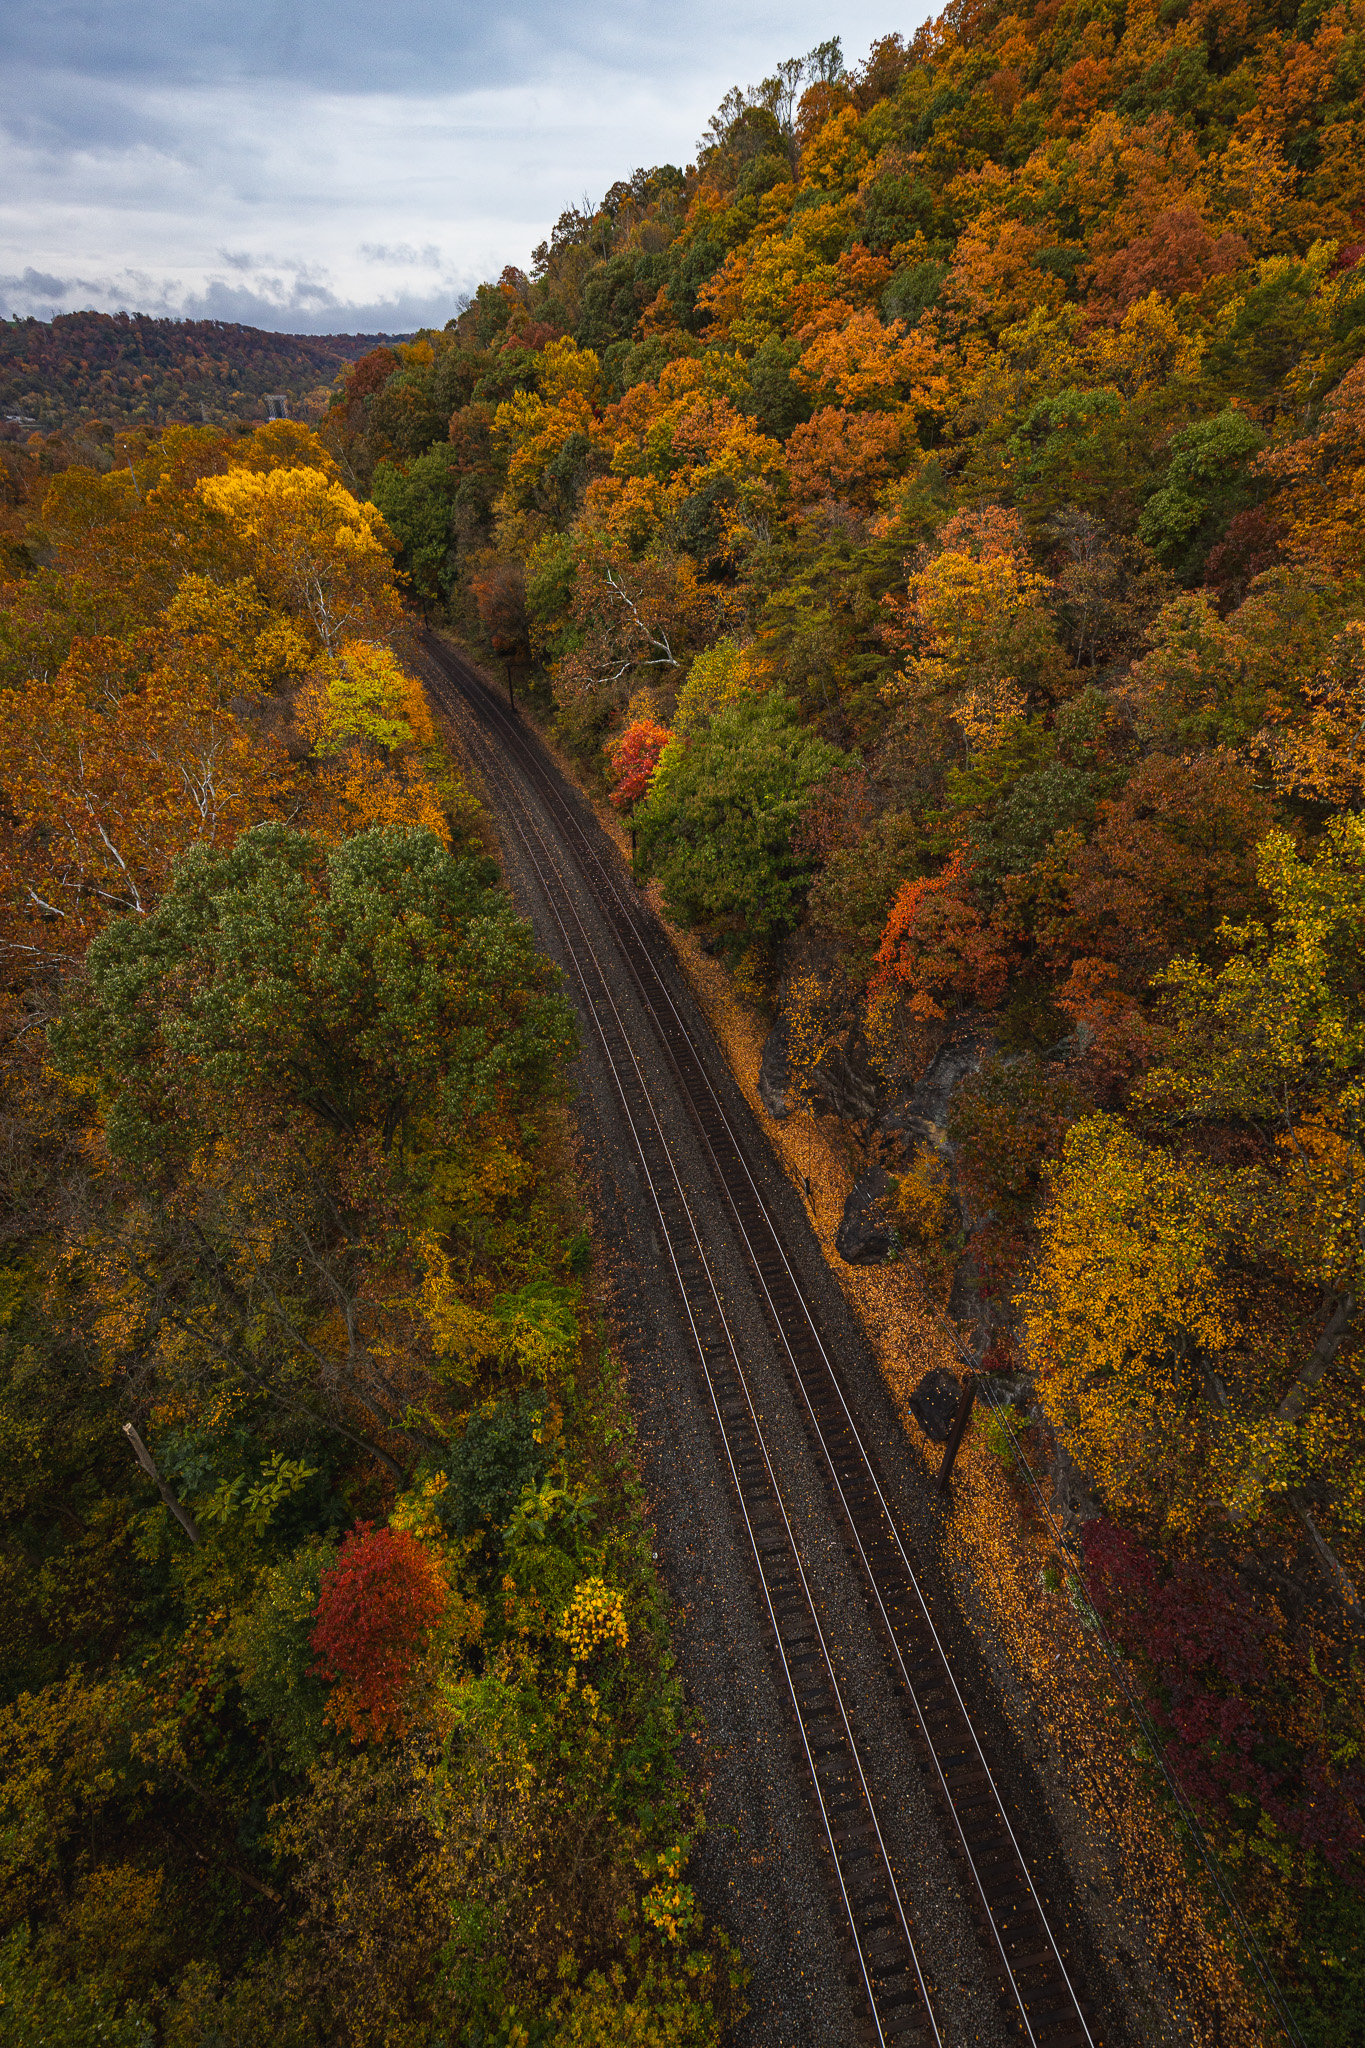 Railroad cutting through fall foliage